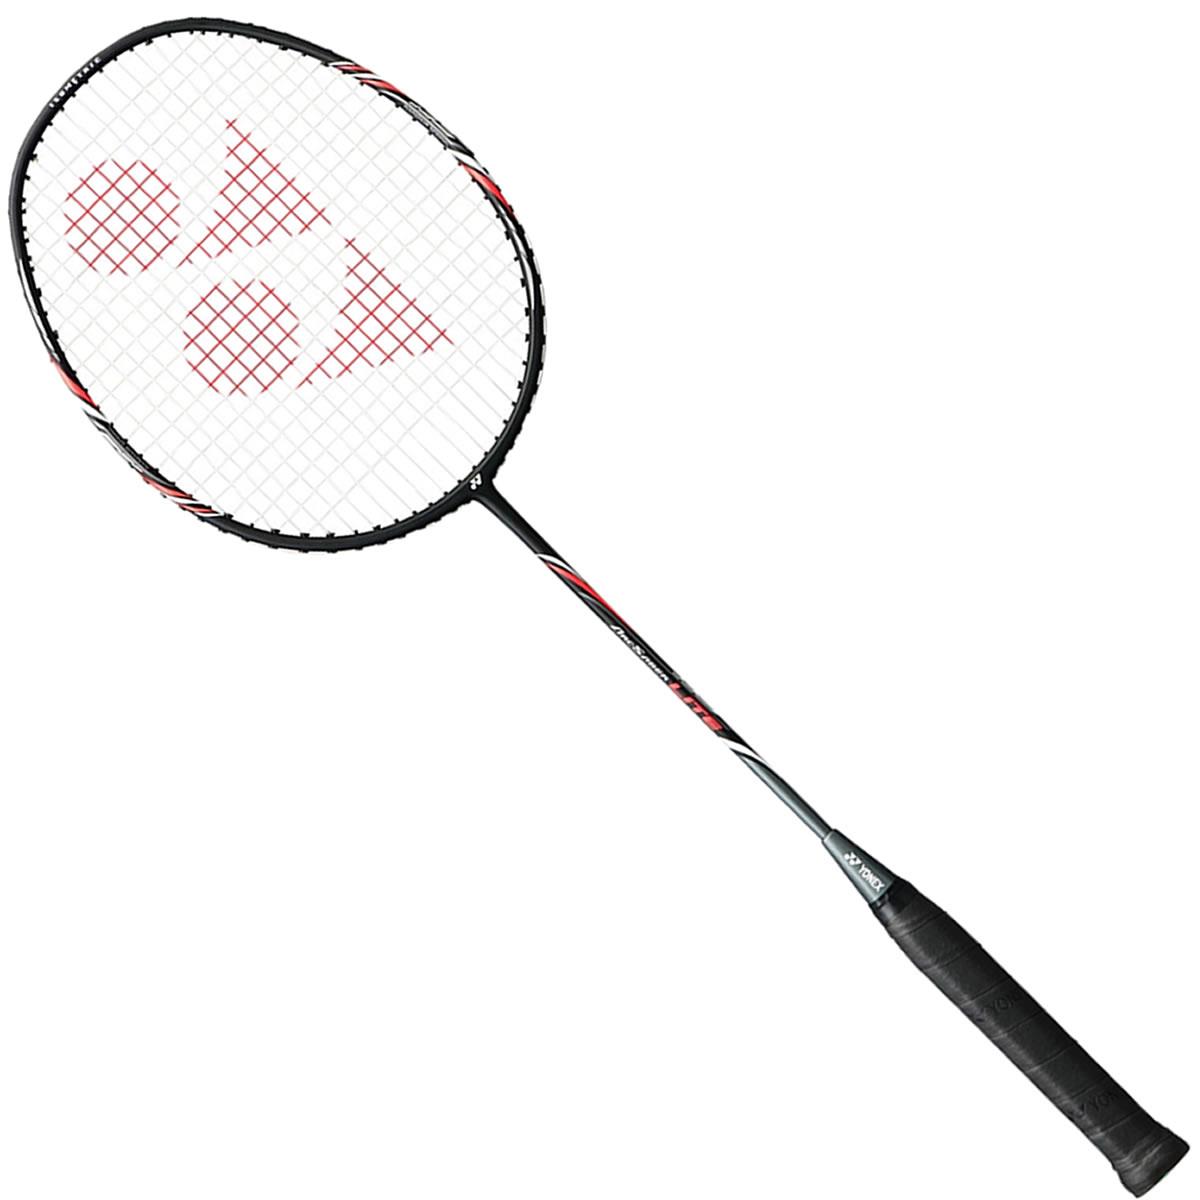 Yonex Arcsaber Lite Badminton Racket - Black Red